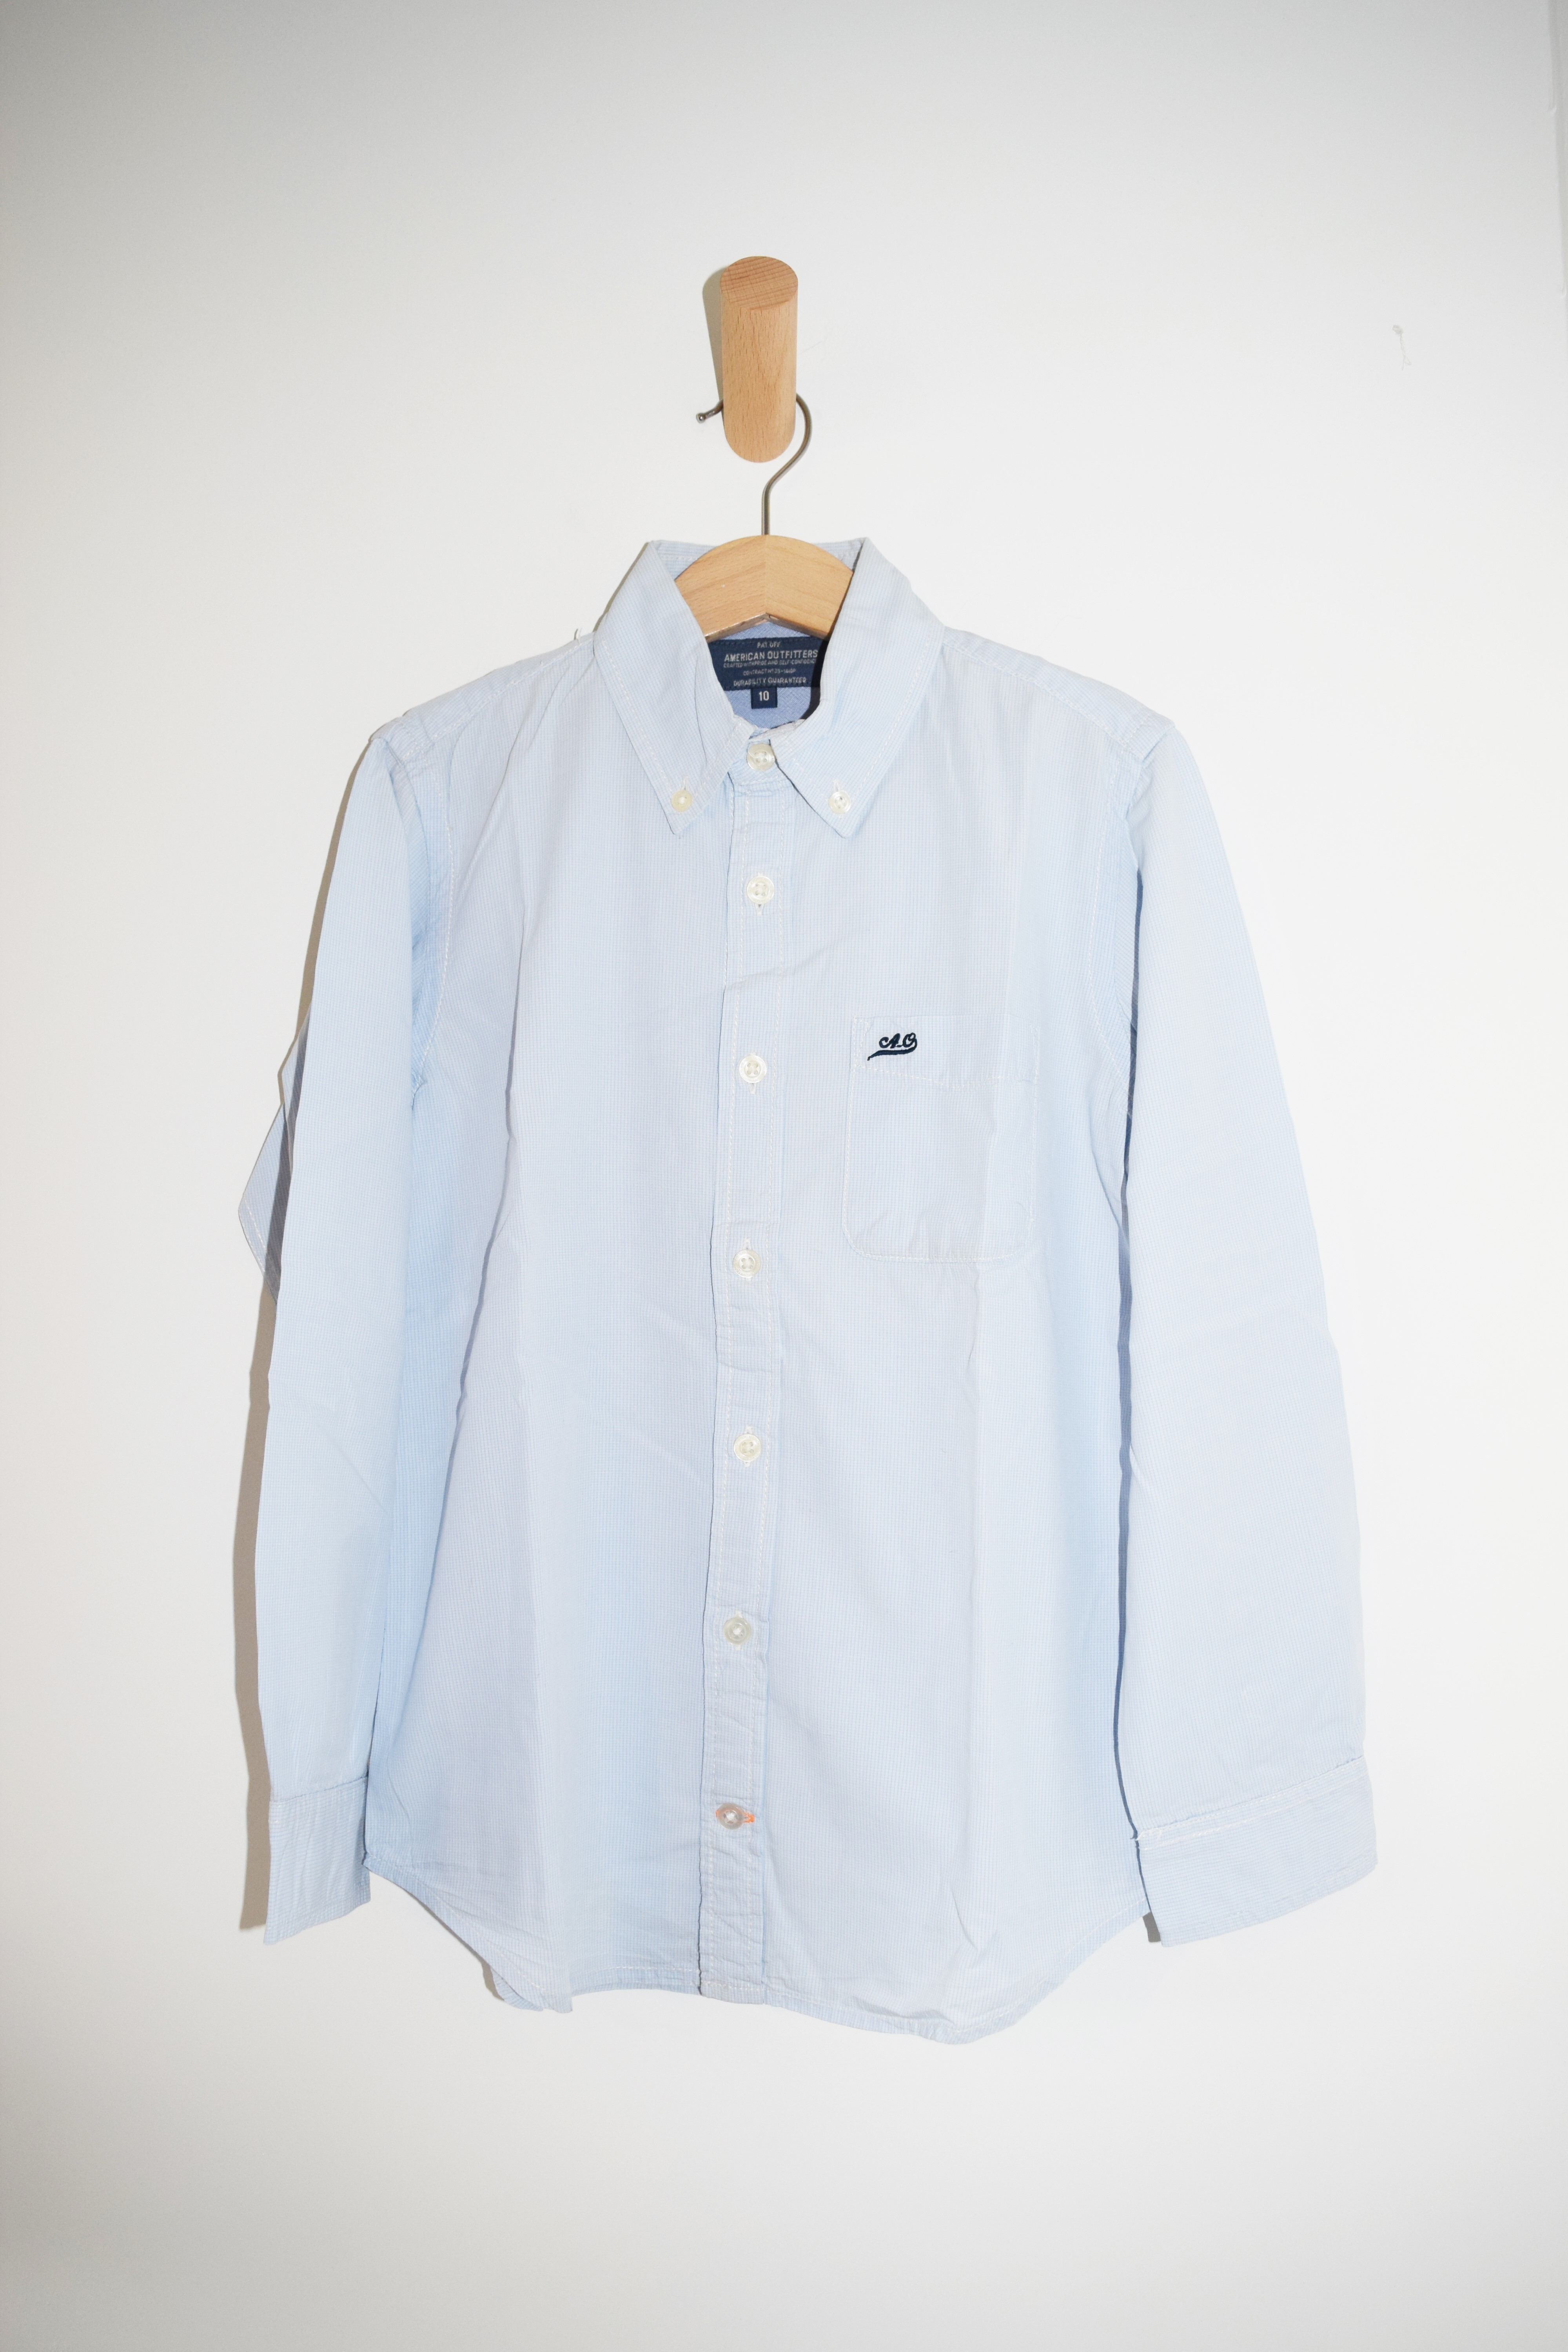 Lichtblauw hemd (met klein ruitje), American Outfitters, 10 jaar 